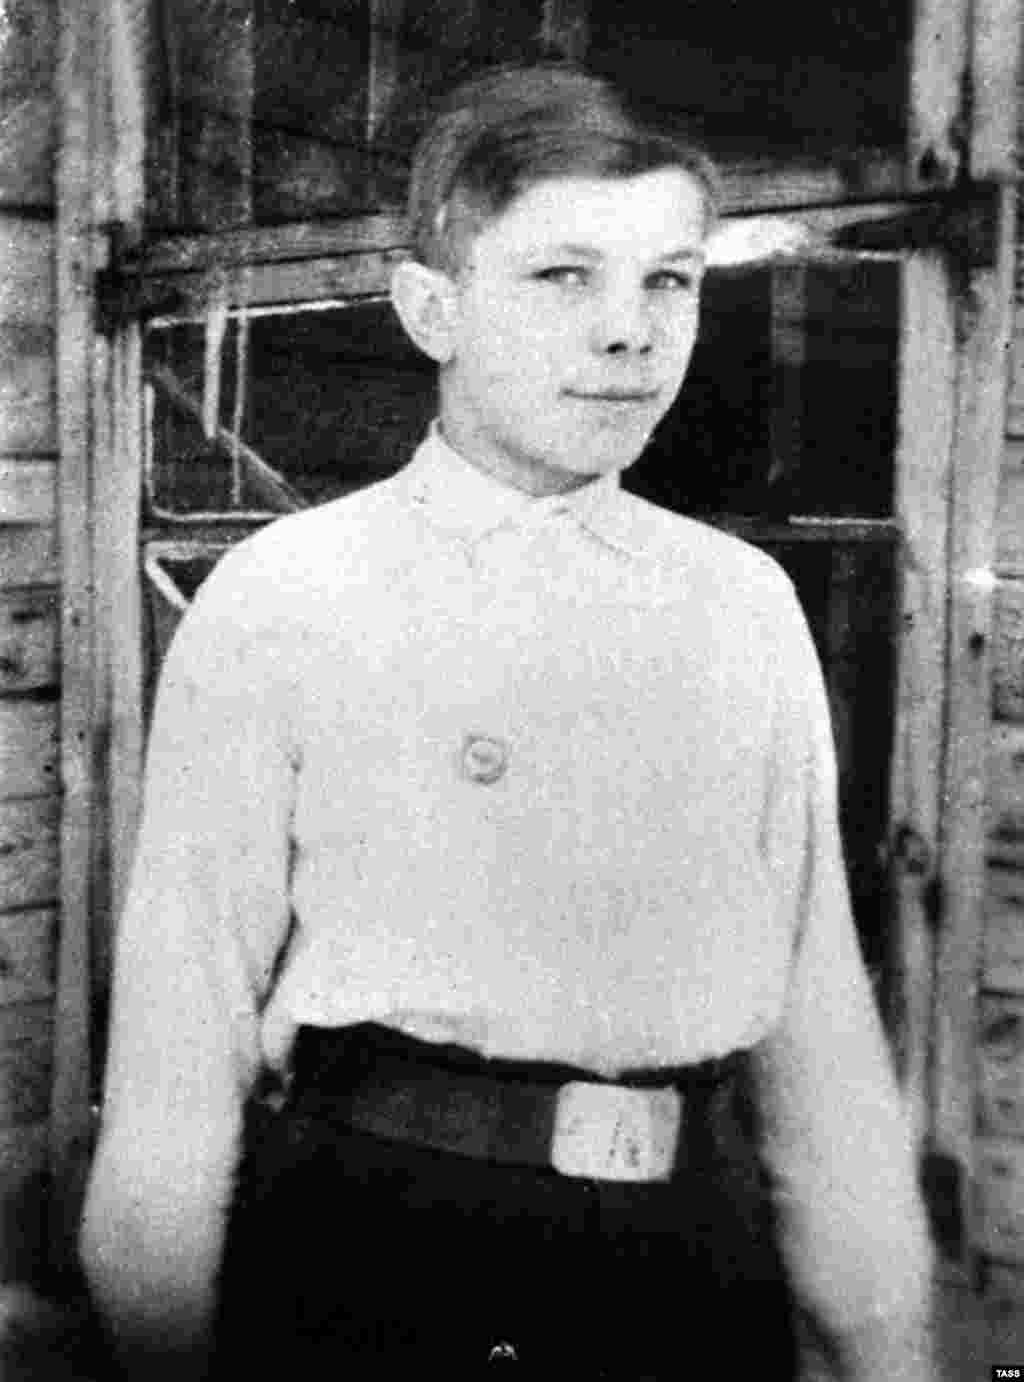 Гагарин родился в деревне Клушино (ныне в Смоленской области, Россия) 9 марта 1934 года. Эта фотография сделана в 1946 году в Гжатске, куда его семья переехала после войны